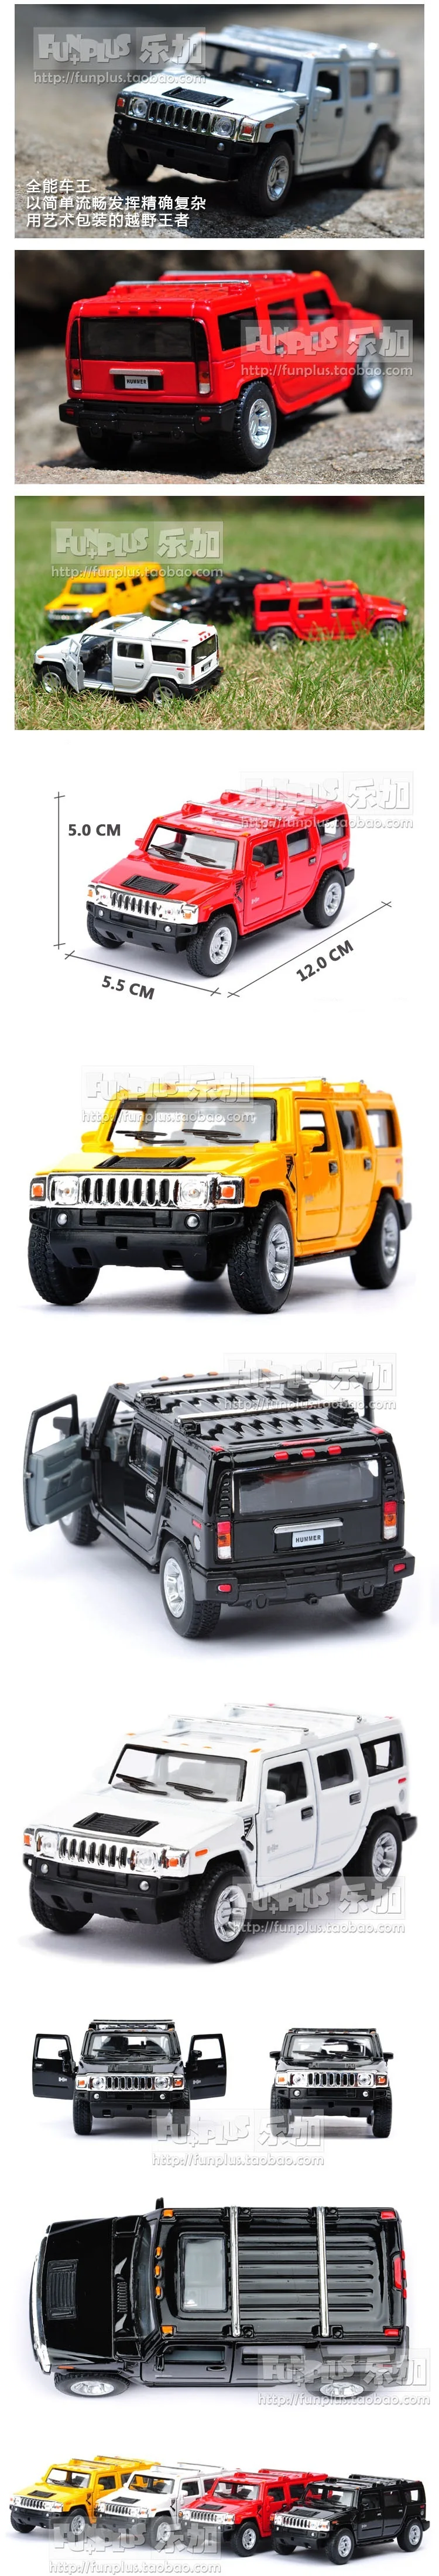 Высокая имитация Изысканная Коллекция Модель игрушки: KiNSMART Автомобиль Стайлинг Hummer H2 SUV модель 1:40 сплав модель автомобиля отличные подарки